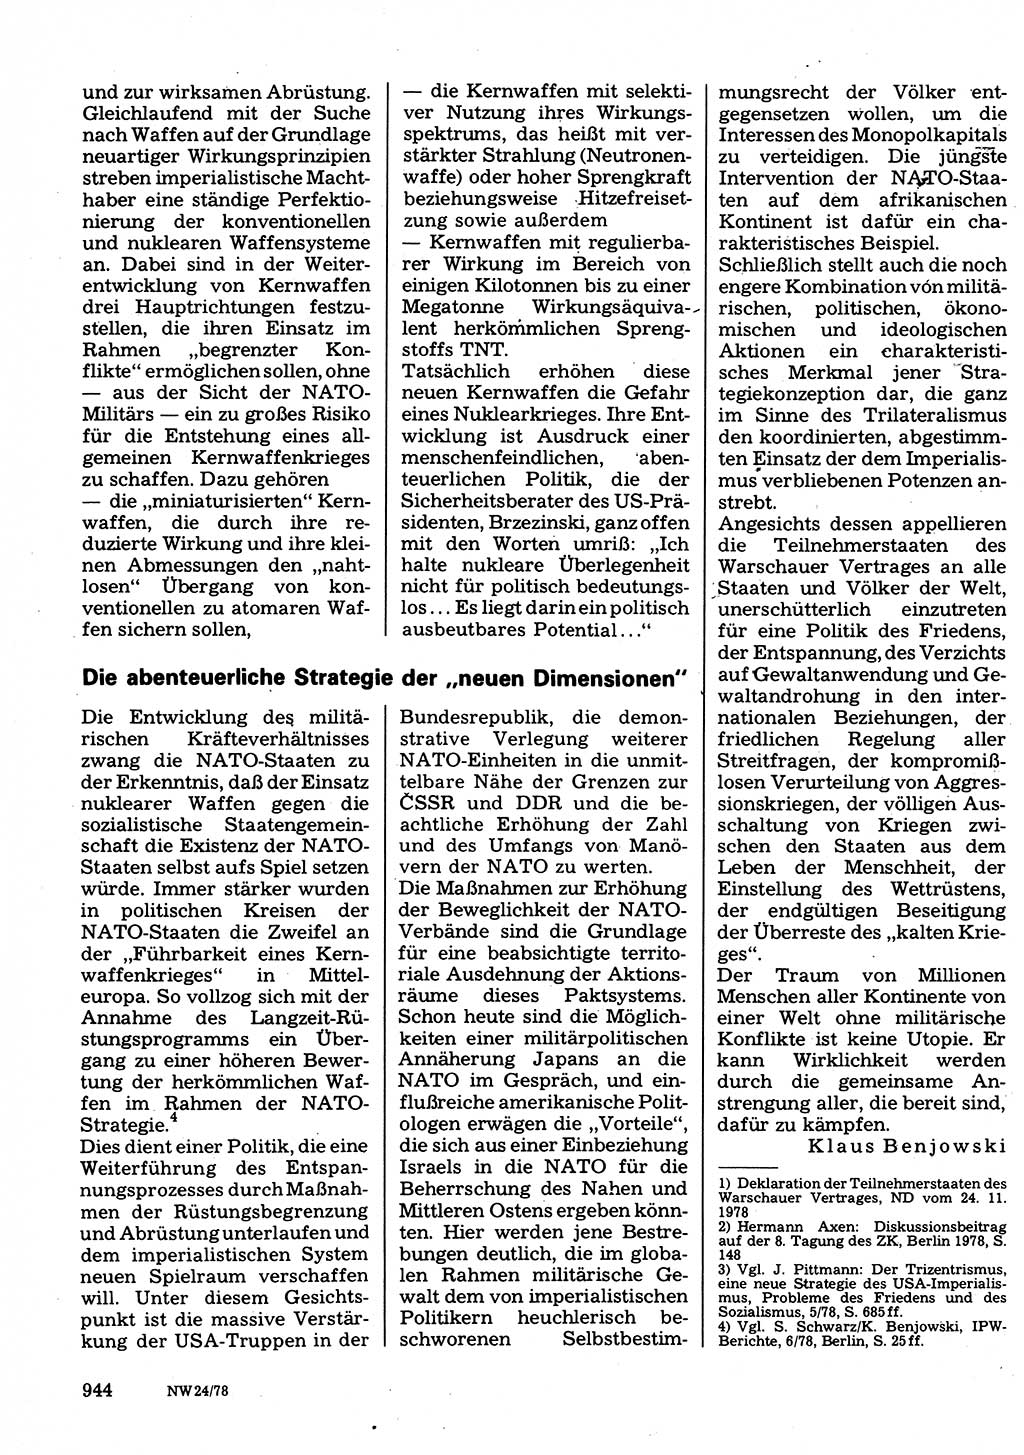 Neuer Weg (NW), Organ des Zentralkomitees (ZK) der SED (Sozialistische Einheitspartei Deutschlands) für Fragen des Parteilebens, 33. Jahrgang [Deutsche Demokratische Republik (DDR)] 1978, Seite 944 (NW ZK SED DDR 1978, S. 944)